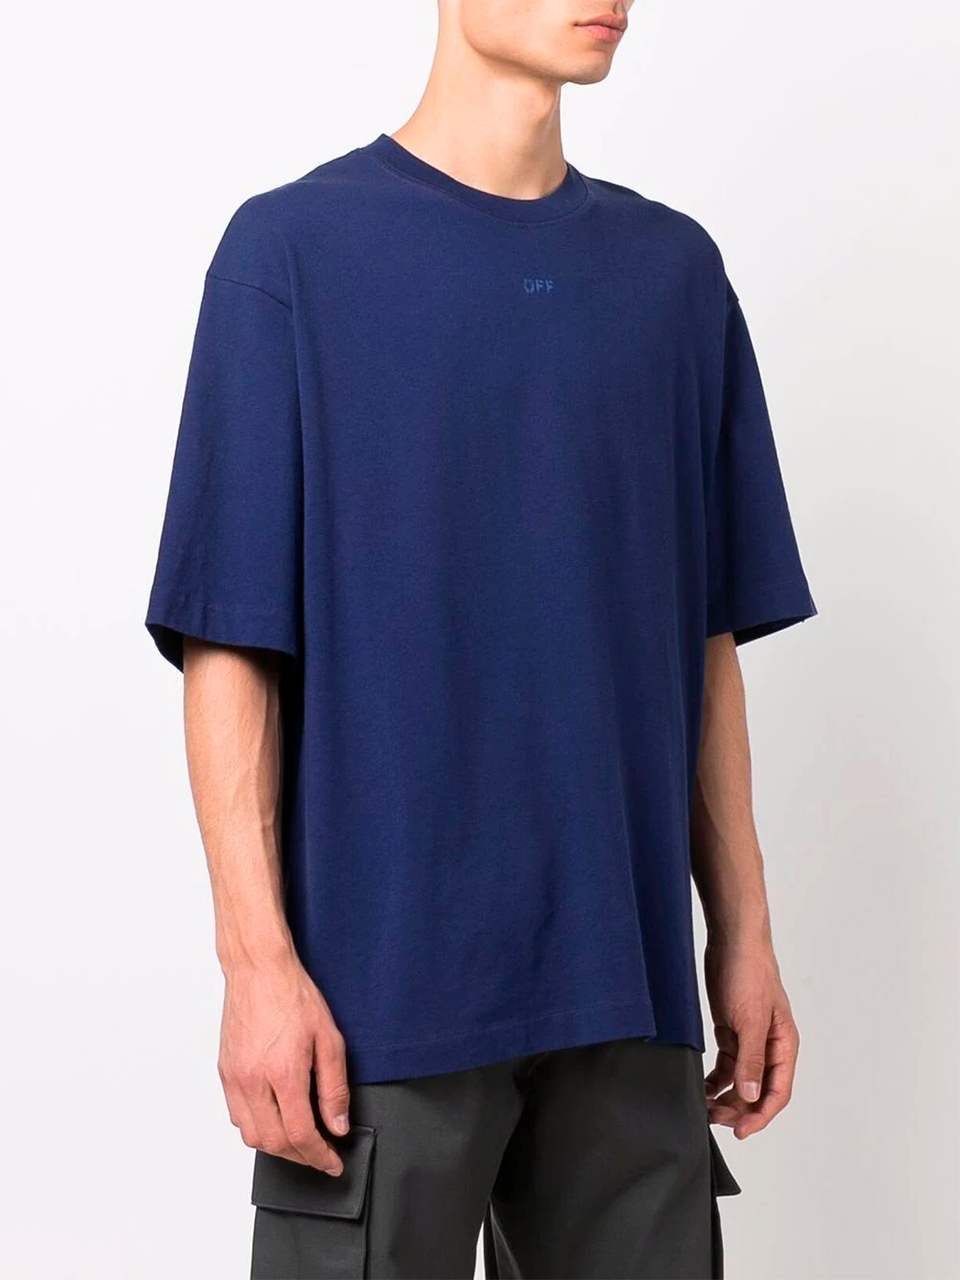 Imagem de: Camiseta Off-White Azul com Estampa Setas